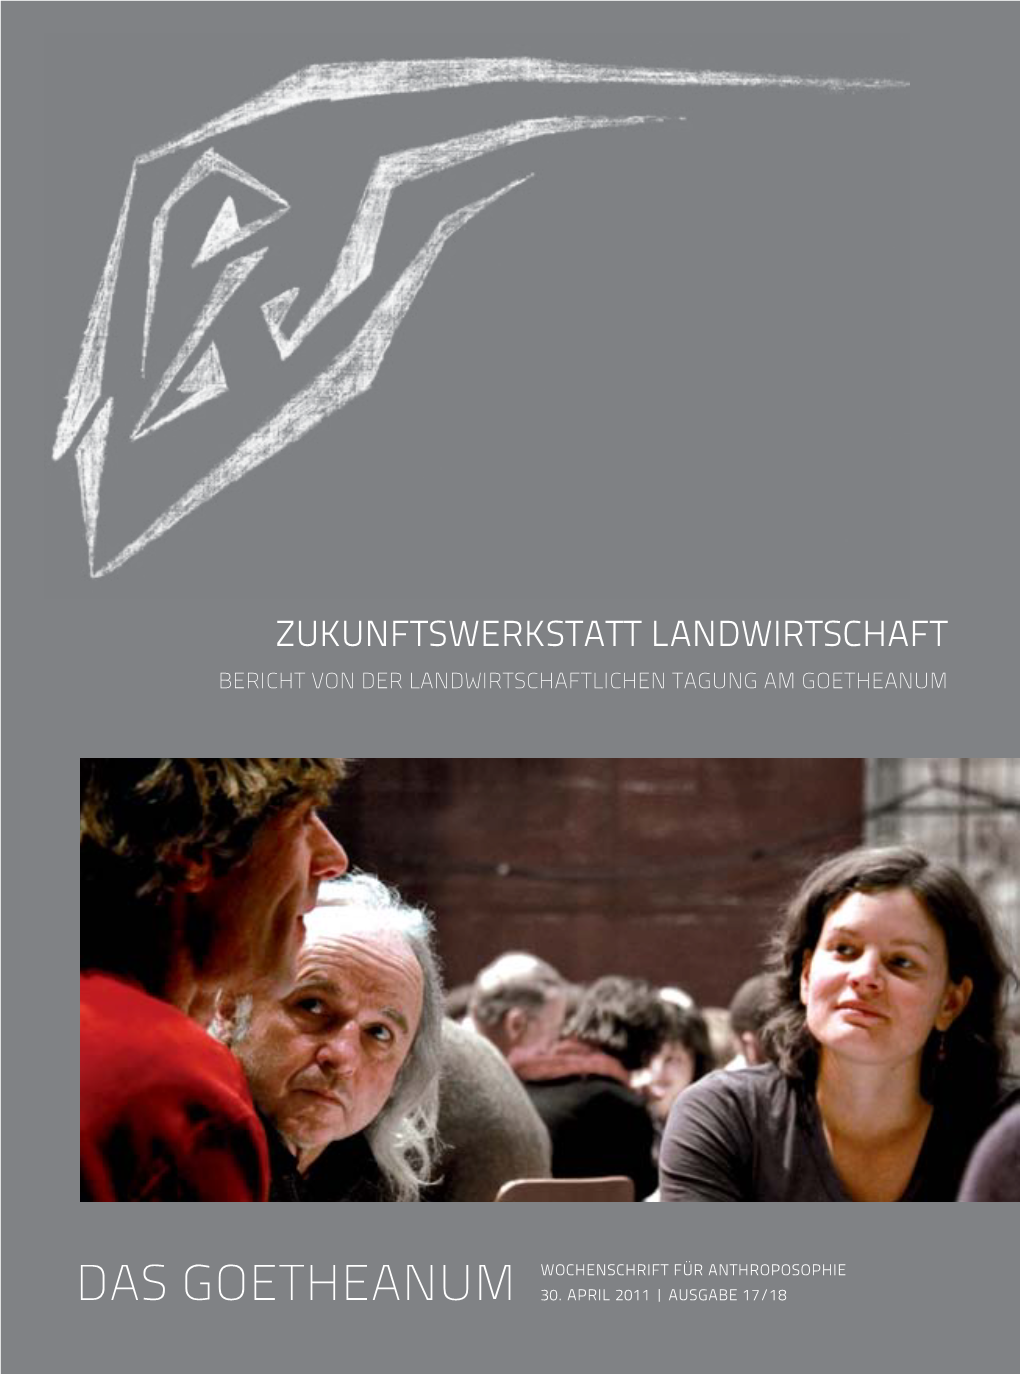 Zukunftswerkstatt Landwirtschaft Bericht Von Der Landwirtschaftlichen Tagung Am Goetheanum